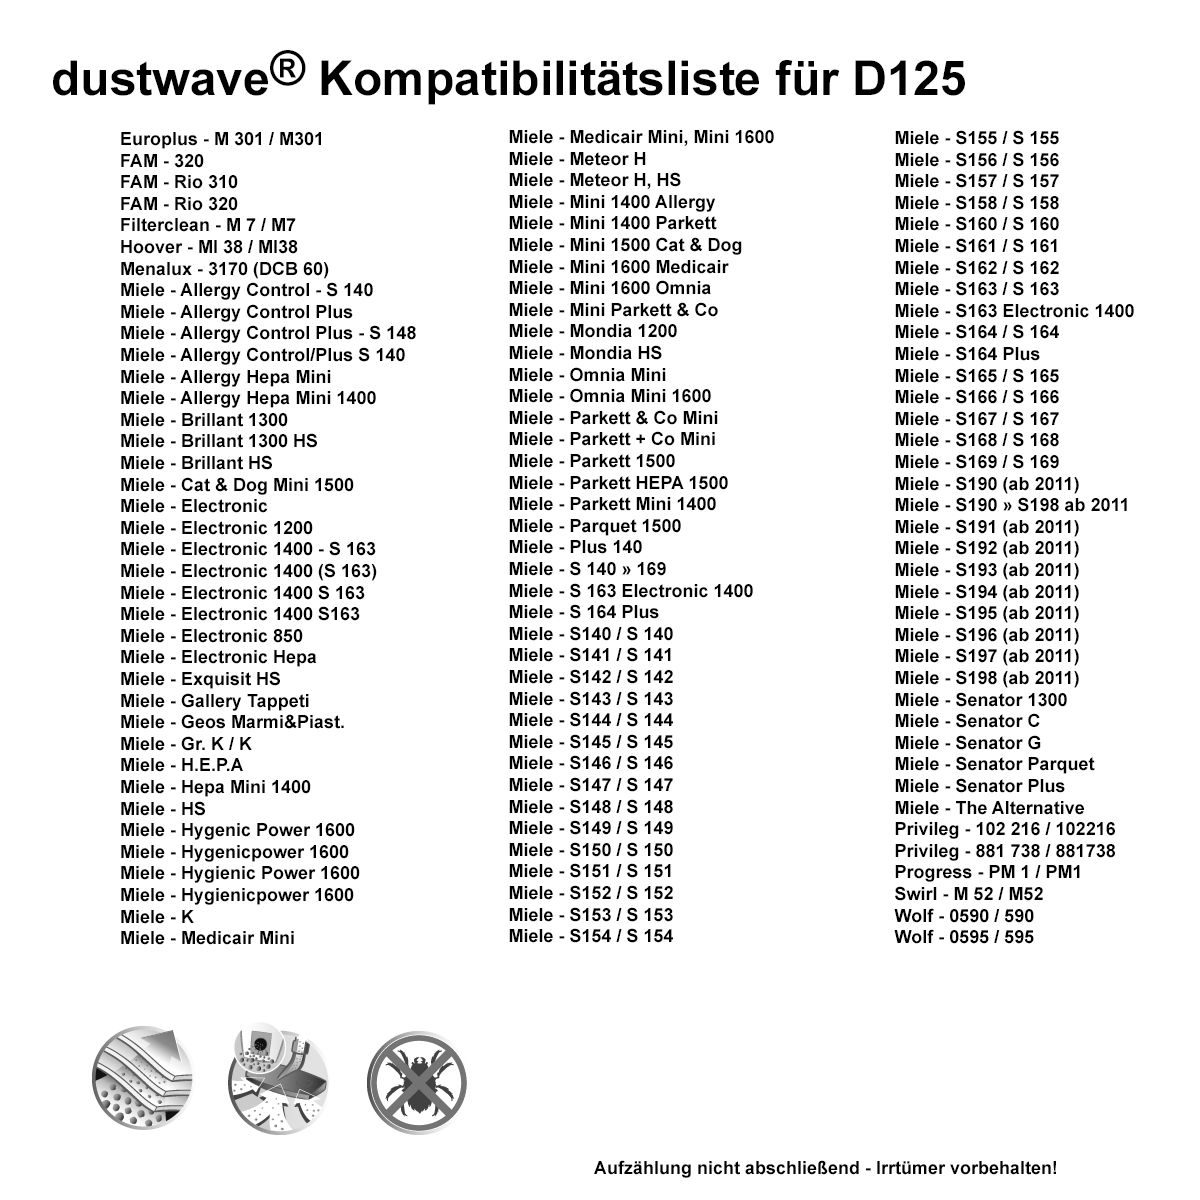 Dustwave® 5 Staubsaugerbeutel für Miele Mondia HS - hocheffizient, mehrlagiges Mikrovlies mit Hygieneverschluss - Made in Germany